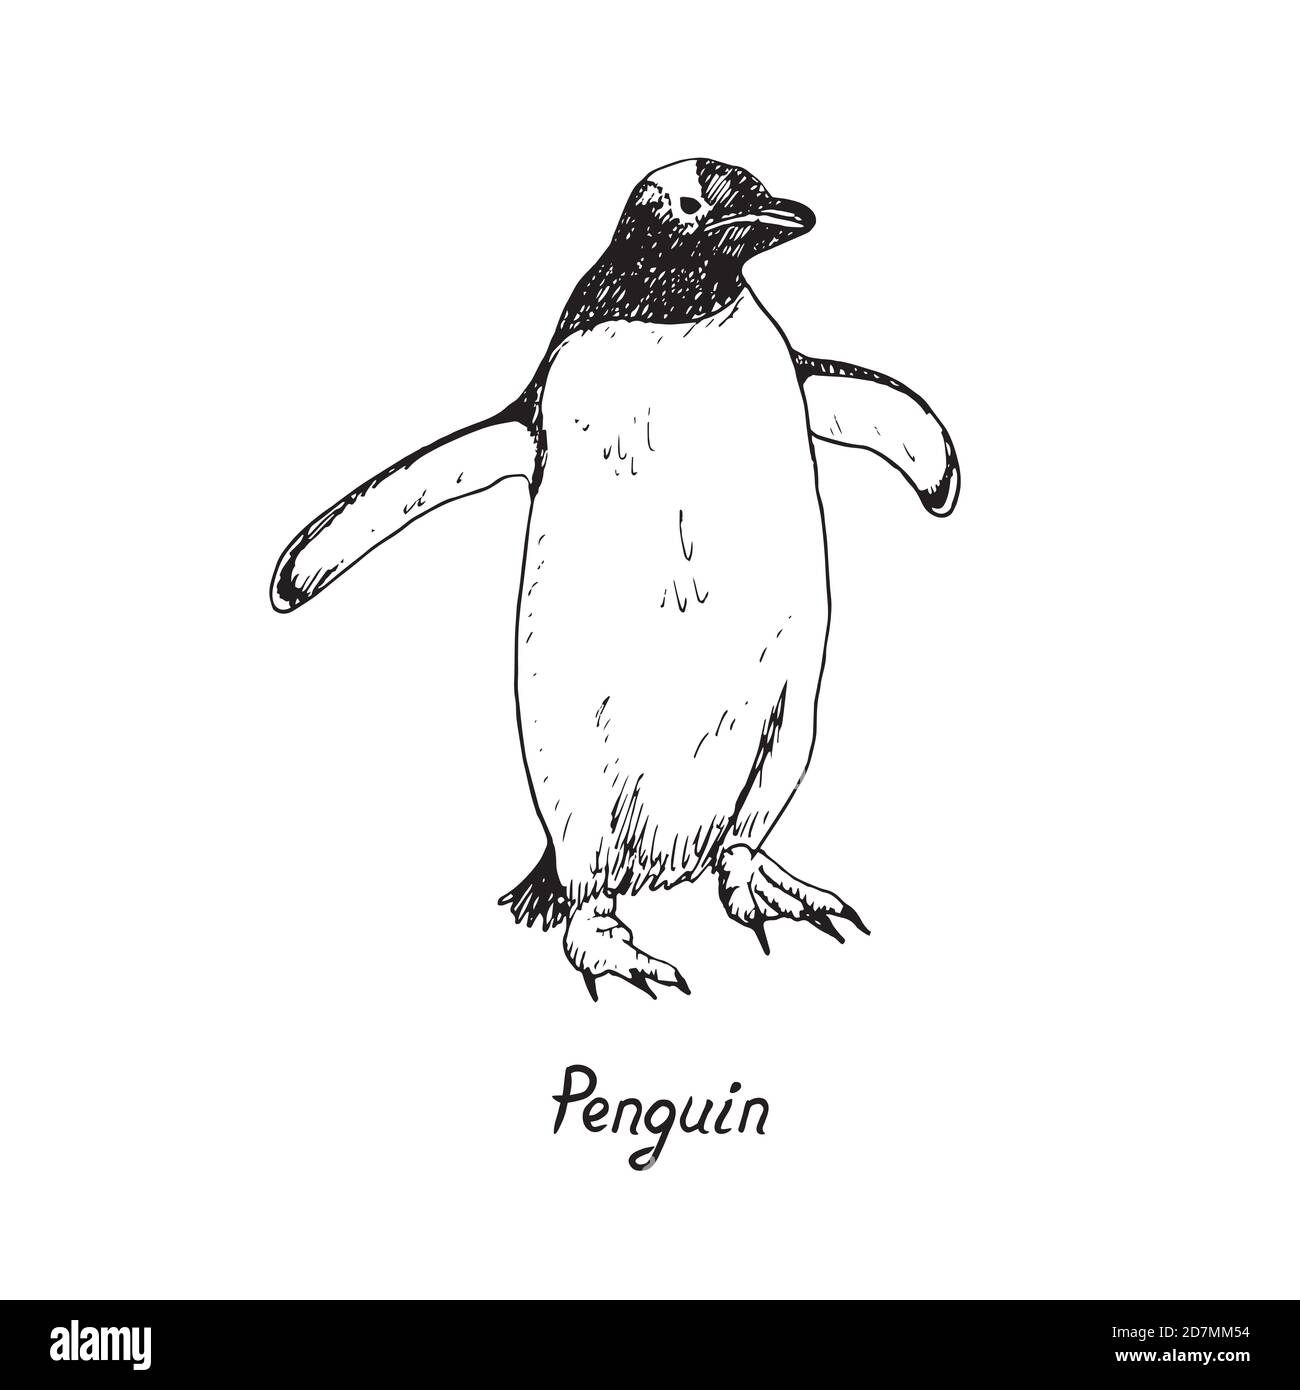 Pinguino che tiene ampie ali e camminare, doodle disegnati a mano, schizzo in stile pop art, illustrazione del contorno con iscrizione Foto Stock